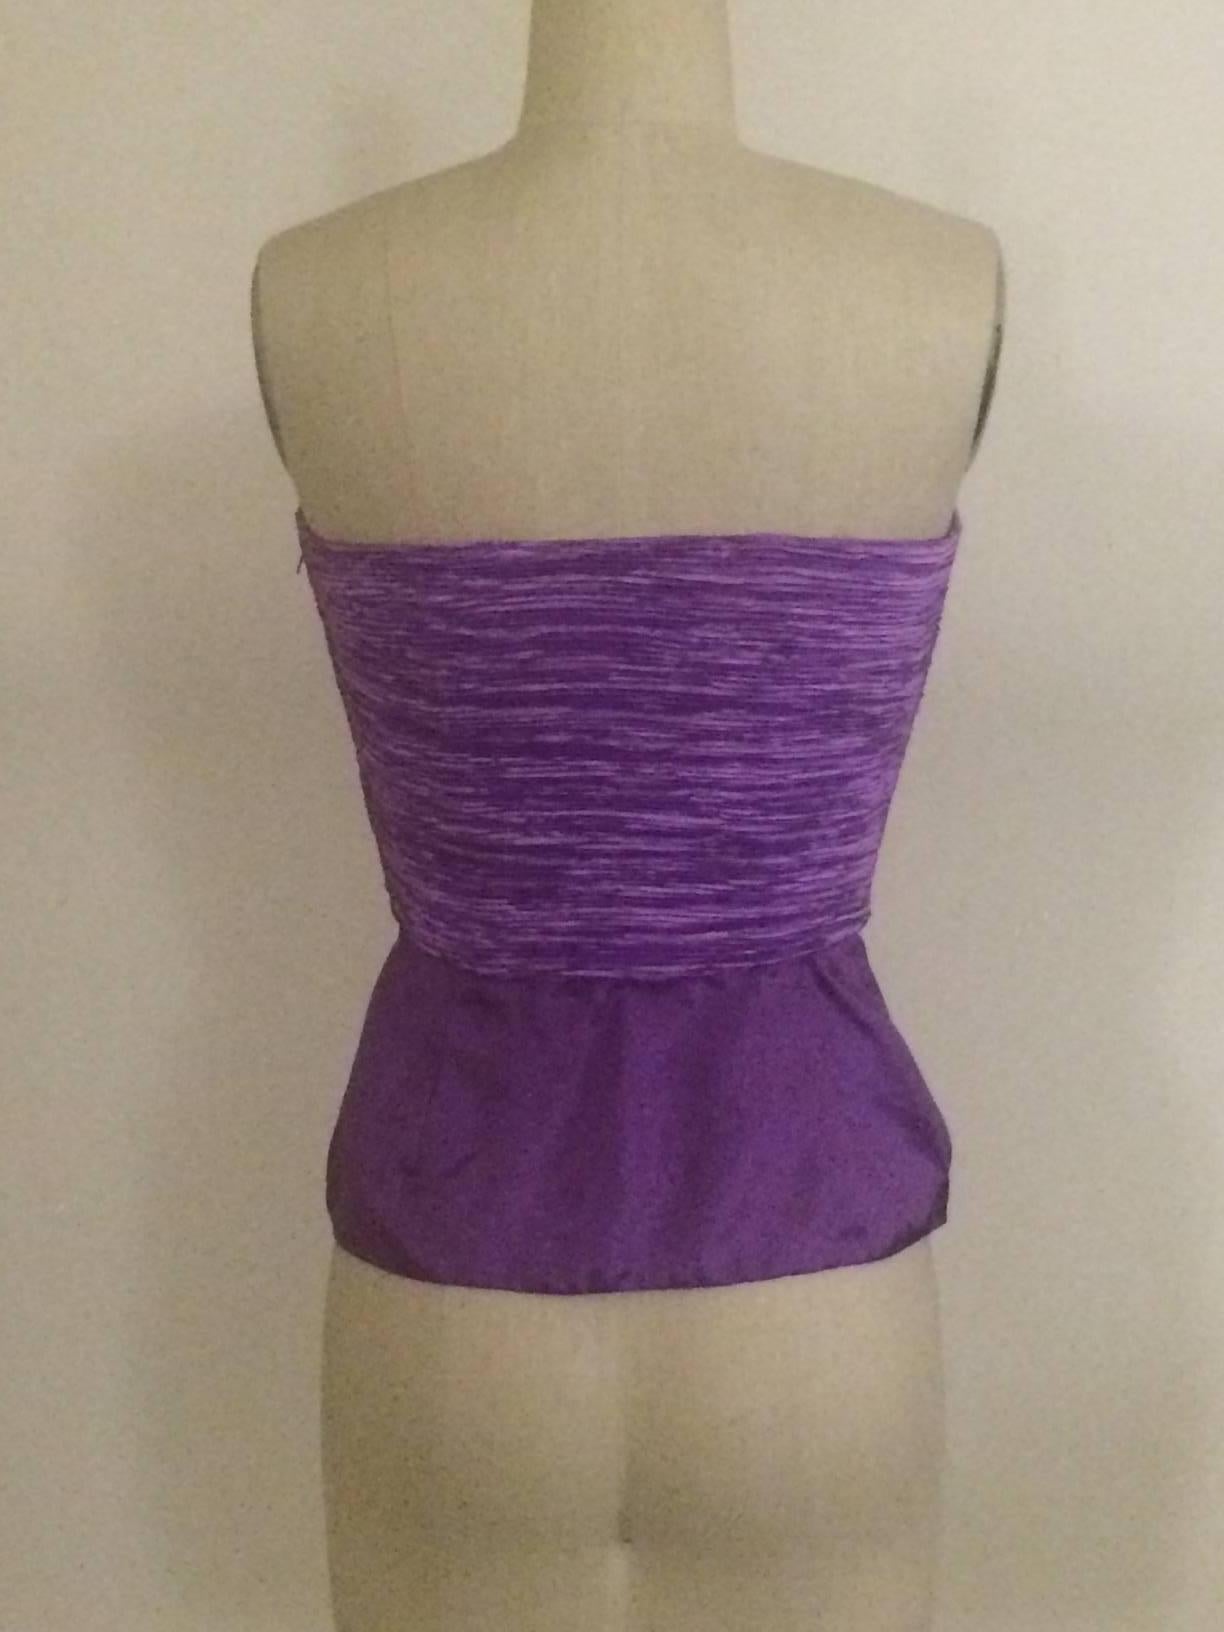 Mary McFadden Couture for Saks Fifth Avenue, début des années 1990, haut à plis signature sans bretelles violet avec bas à péplum. Désossage en haut. Fermeture éclair sur le côté.

100% polyester.

Fabriqué aux États-Unis.

Taille 2, s'ajuste